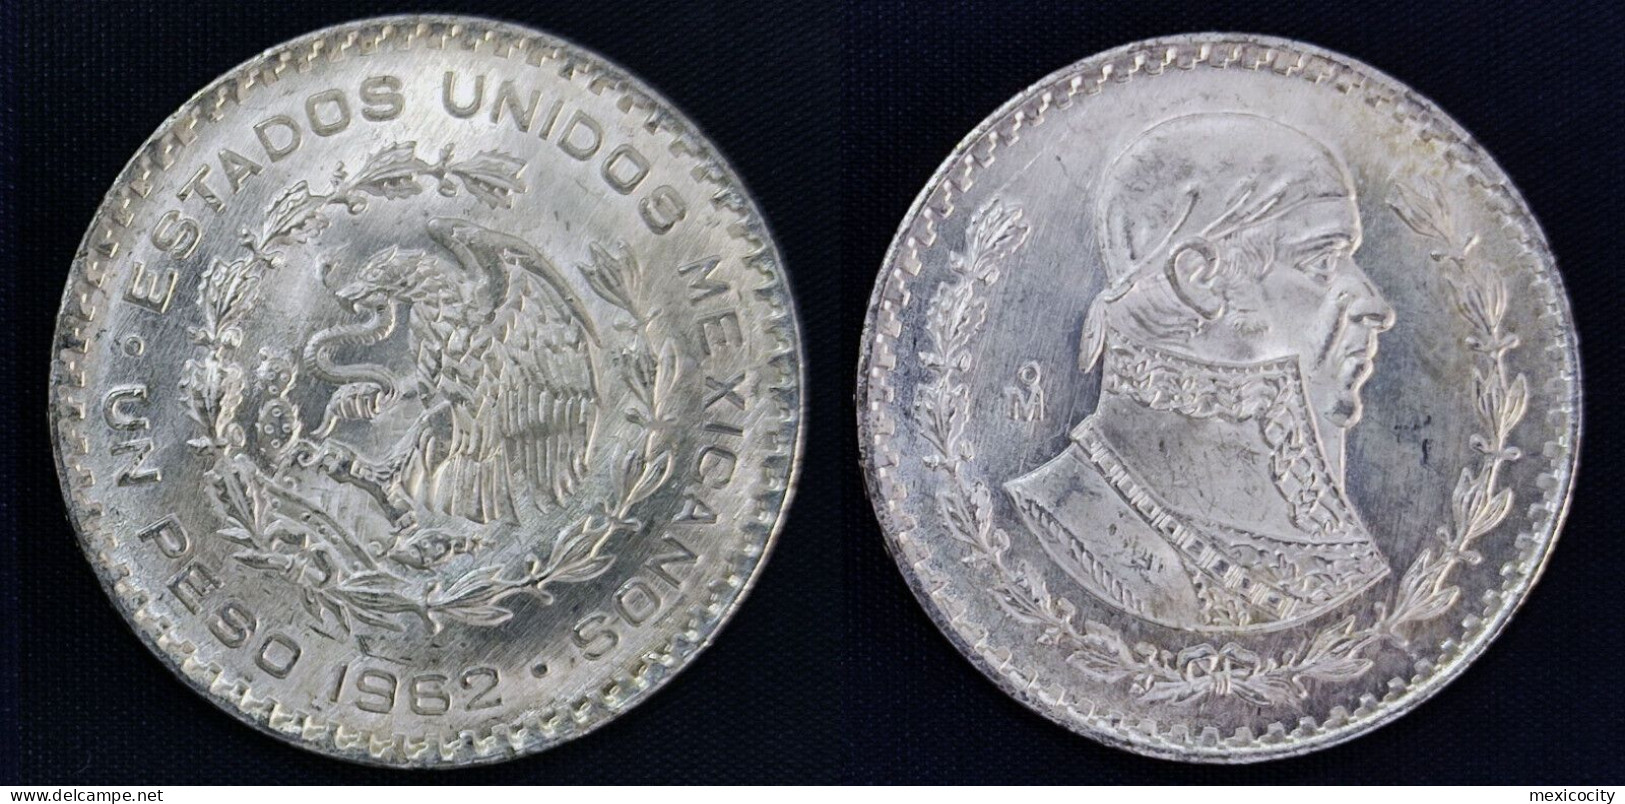 MEXICO 1962 $1 MORELOS 10 % Silver Peso, See Imgs., AU/BU Orig. Shine, Scarce Thus - Mexico